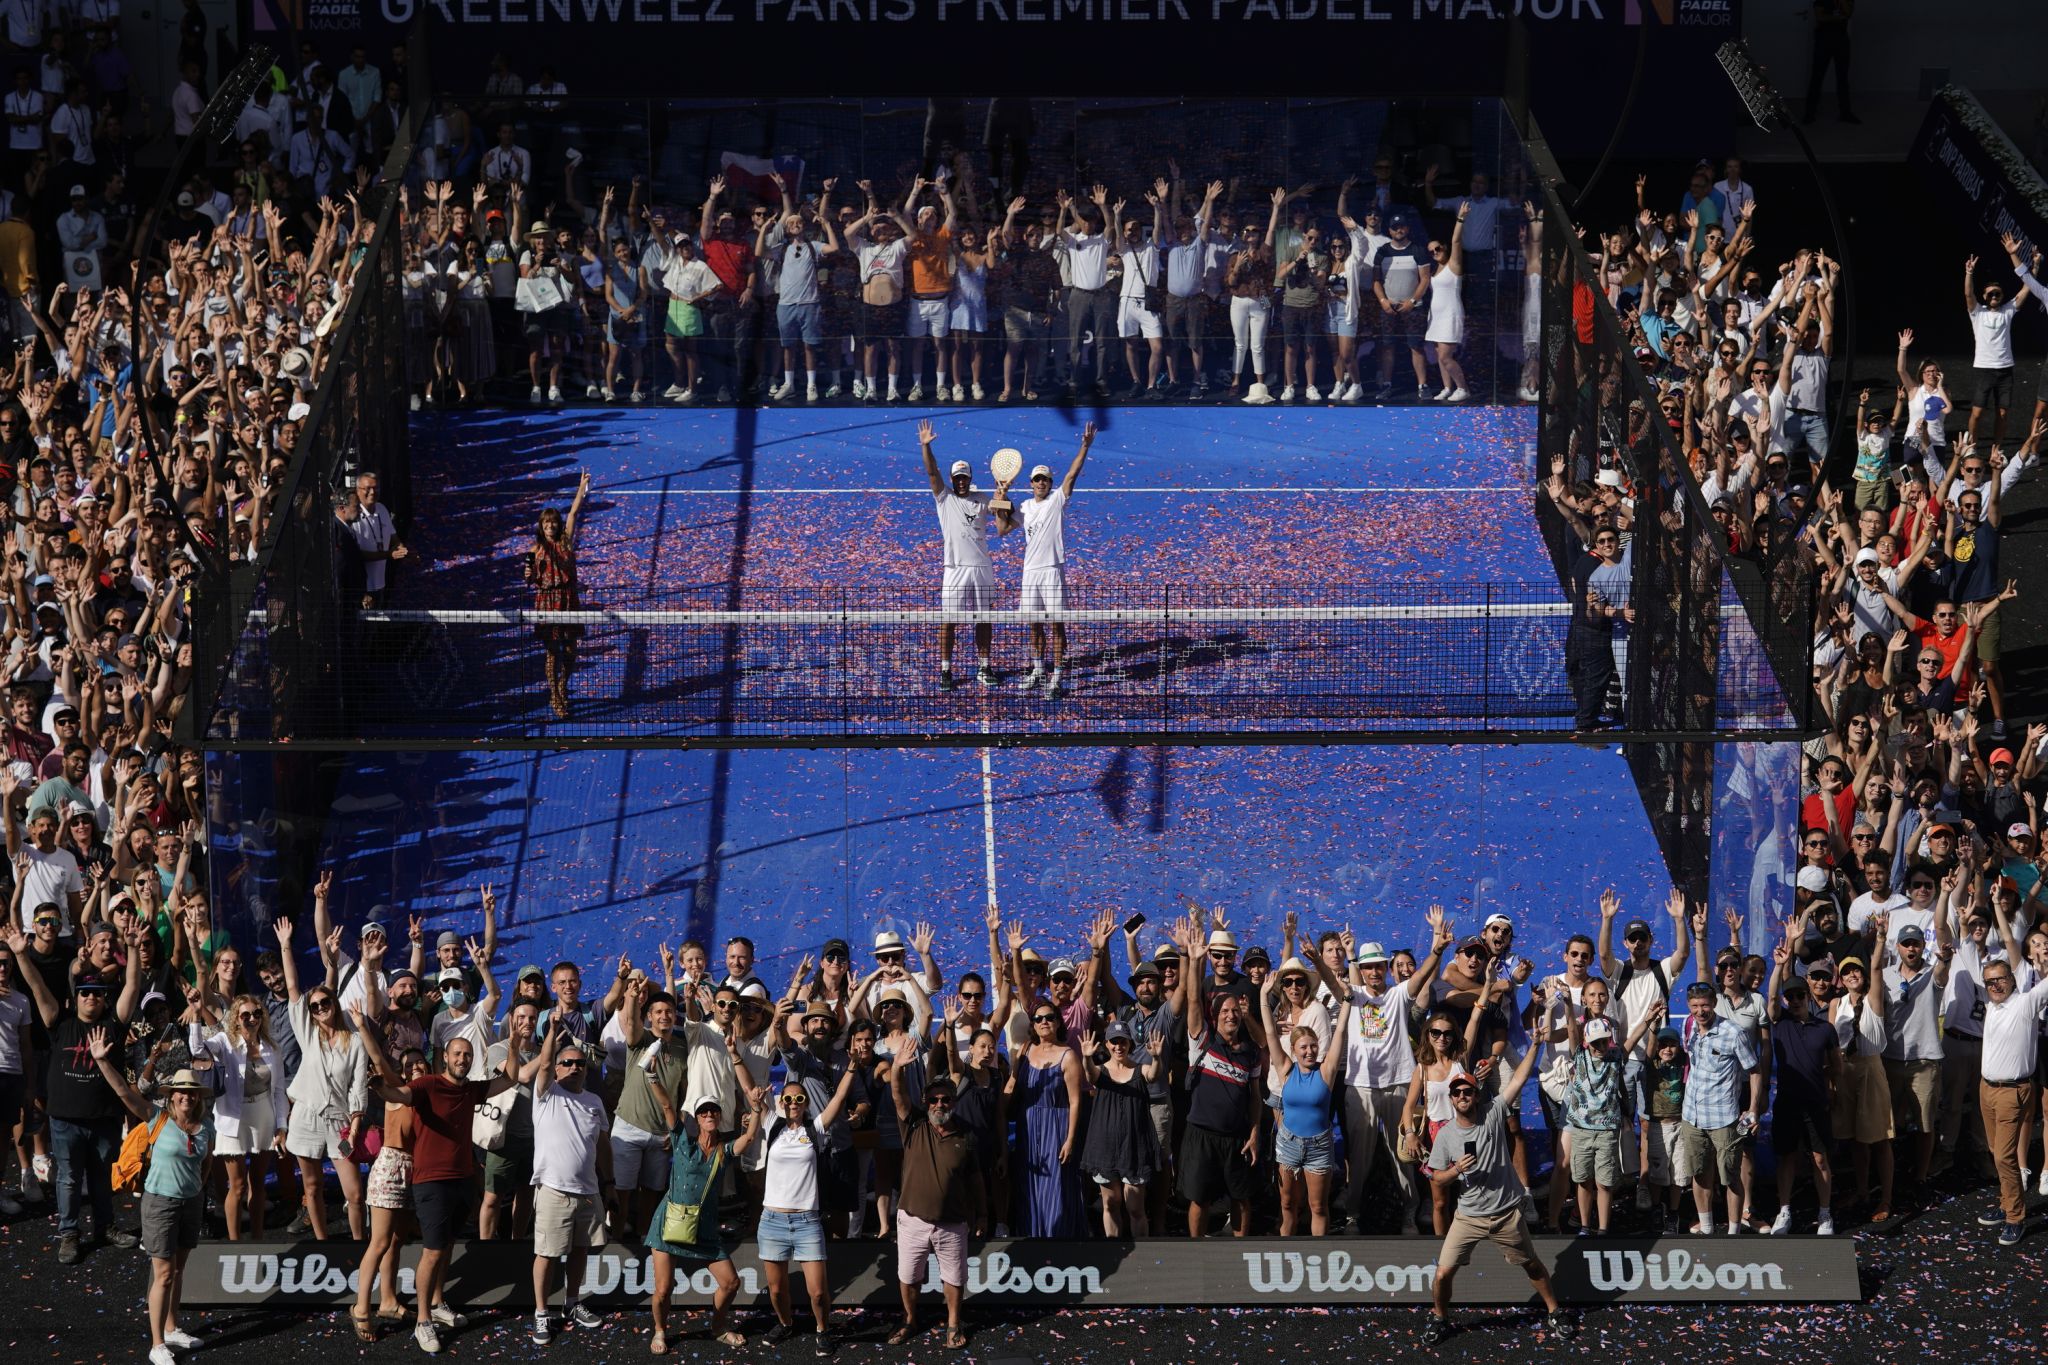 Lebrón / Galan: els primers jugadors de la història a guanyar el Major a l'Stade Roland-Garros.